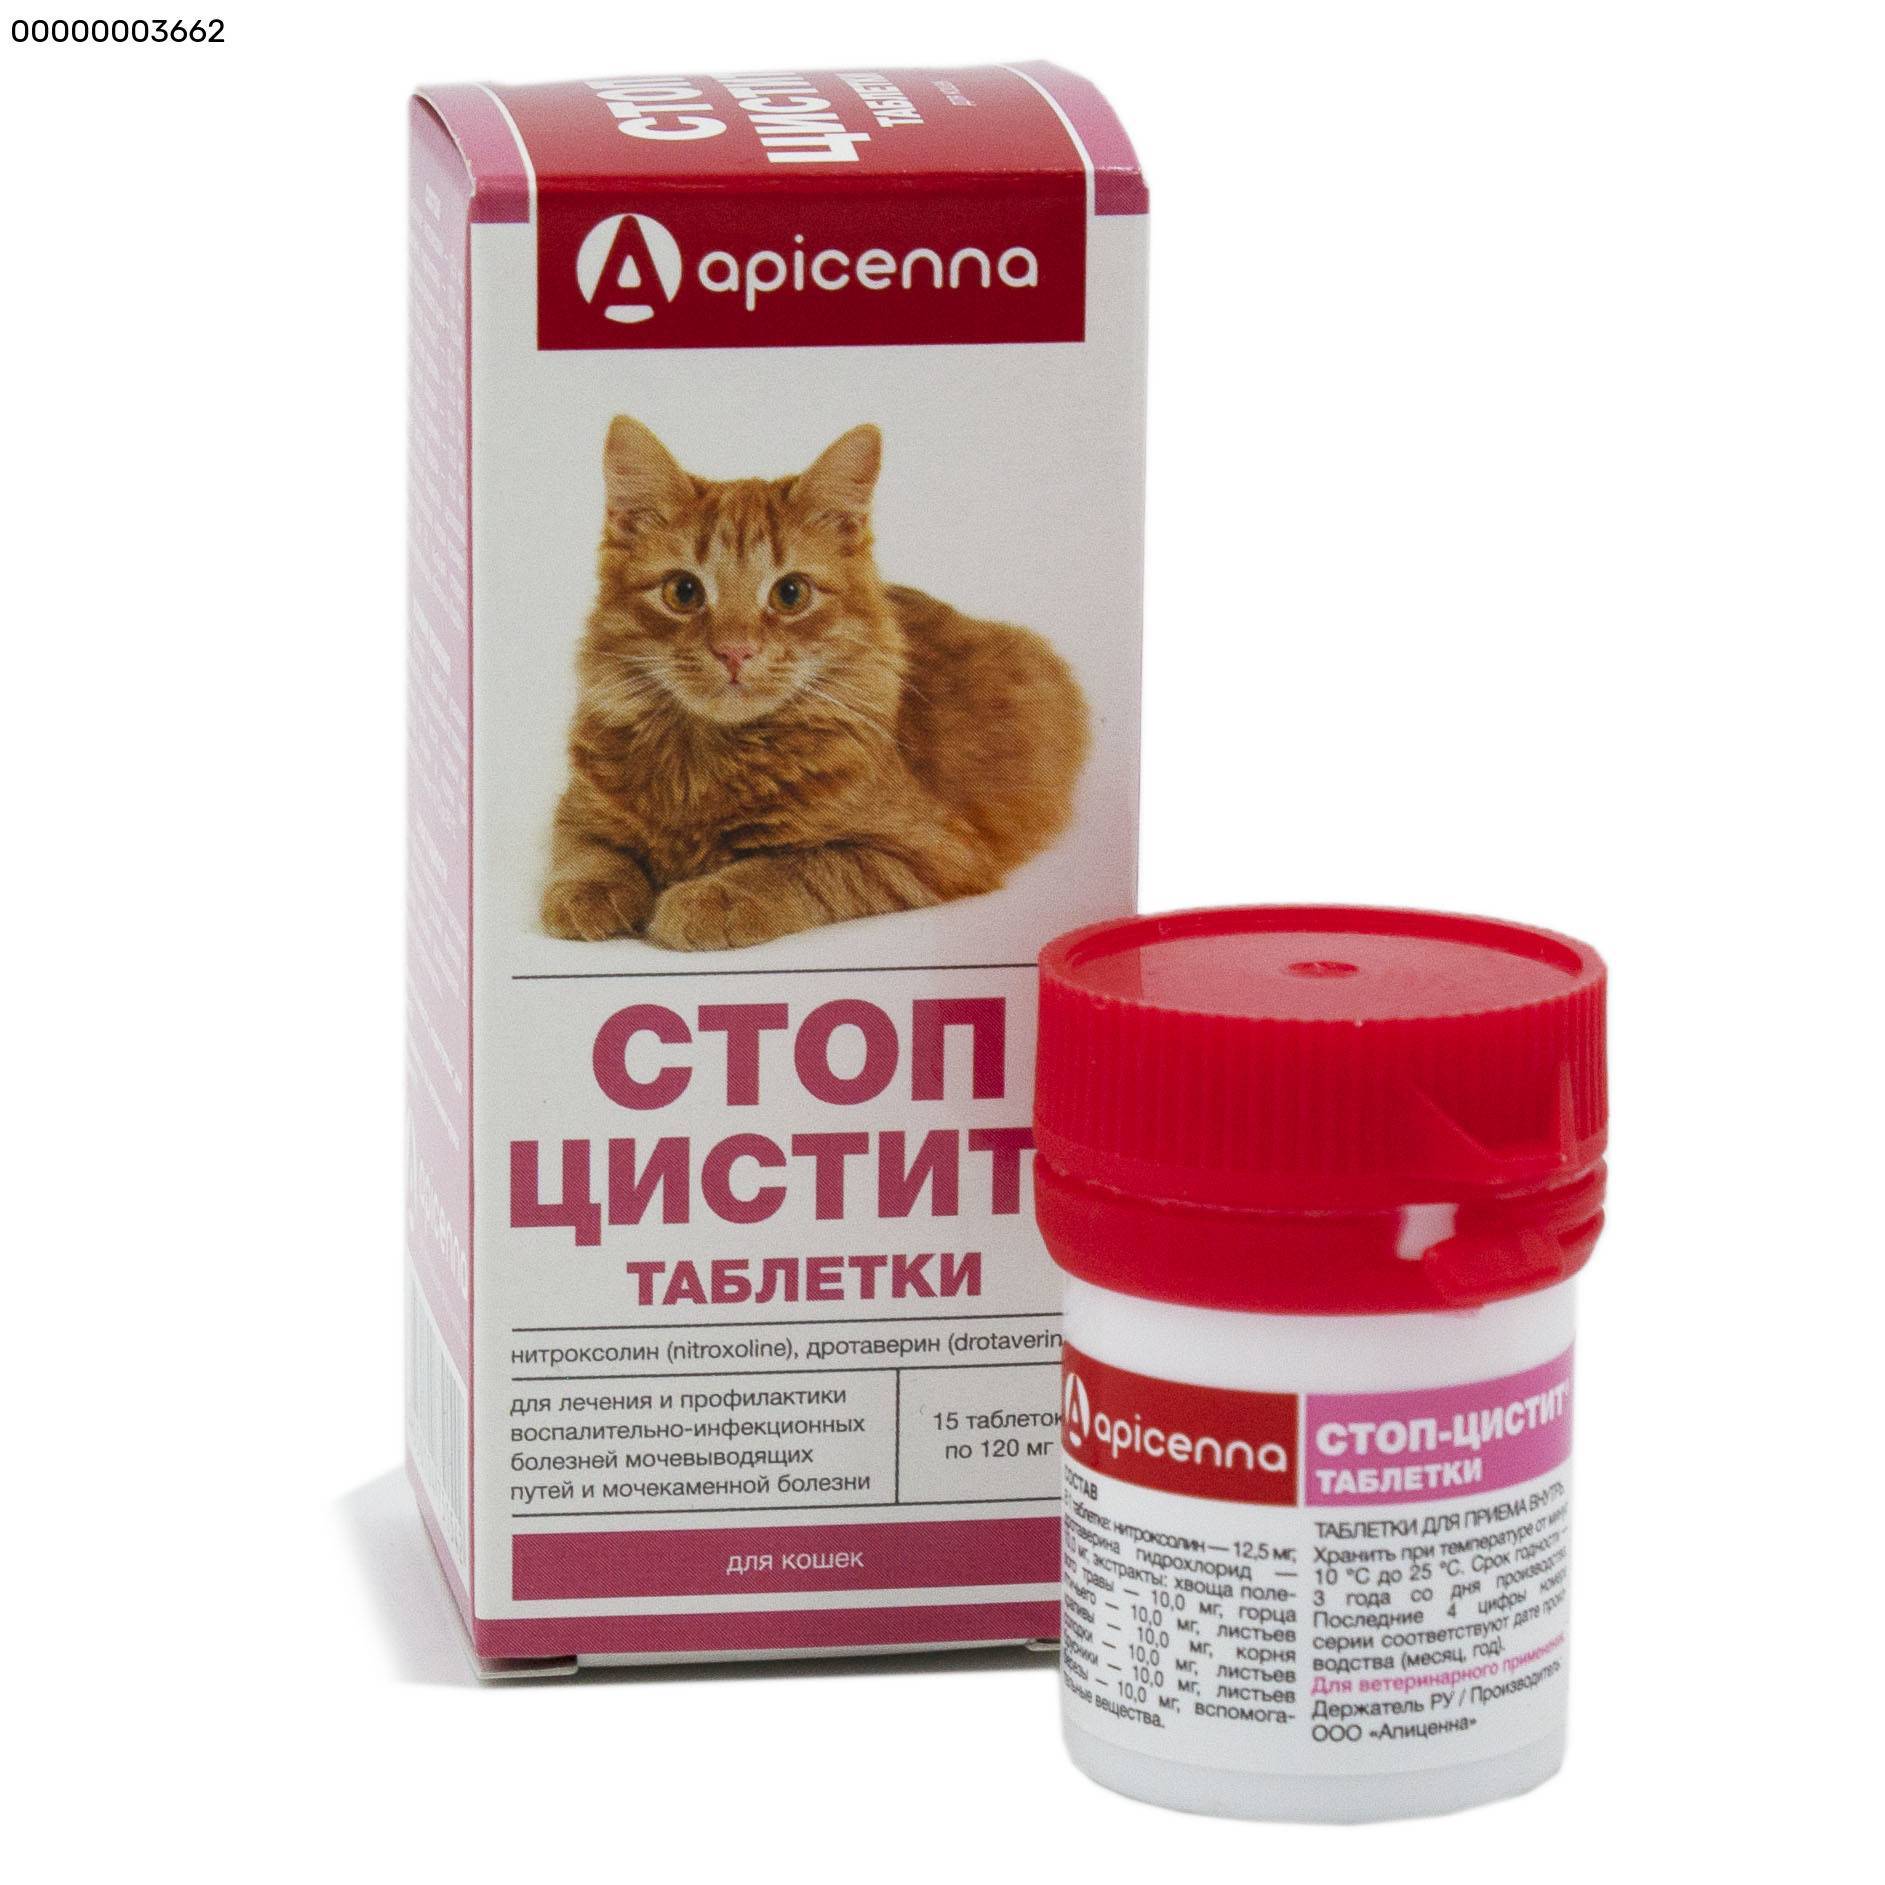 Обзор препарата стоп-цистит для кошек: характеристика, инструкция применения